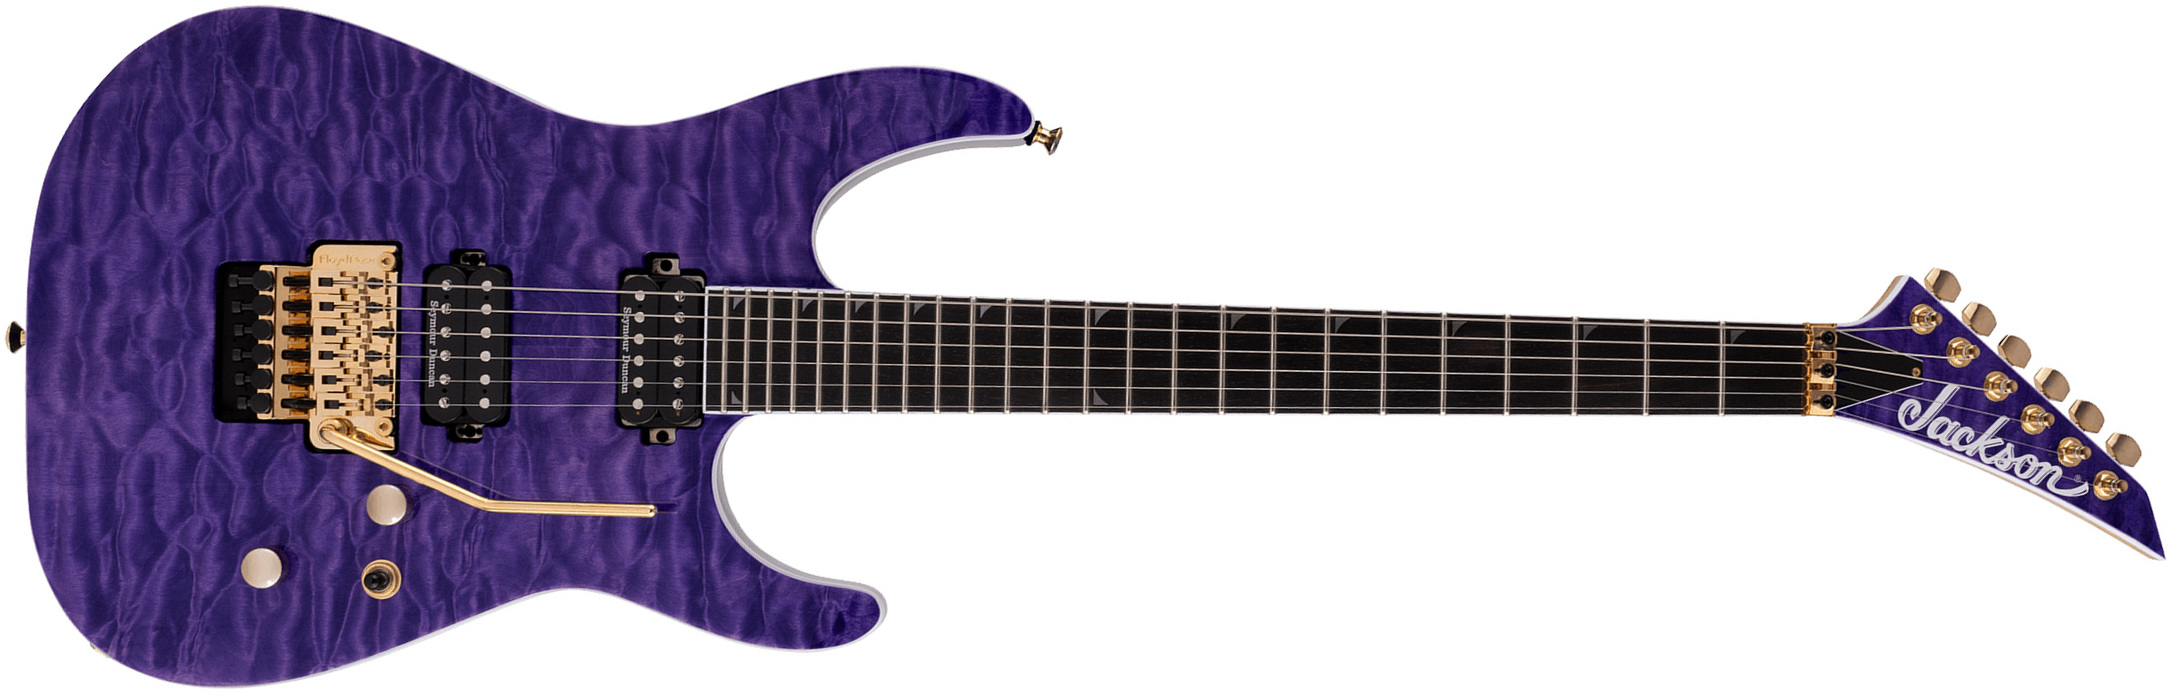 Jackson Soloist Sl2q Mah Pro 2h Seymour Duncan Fr Eb - Transparent Purple - E-Gitarre in Str-Form - Main picture